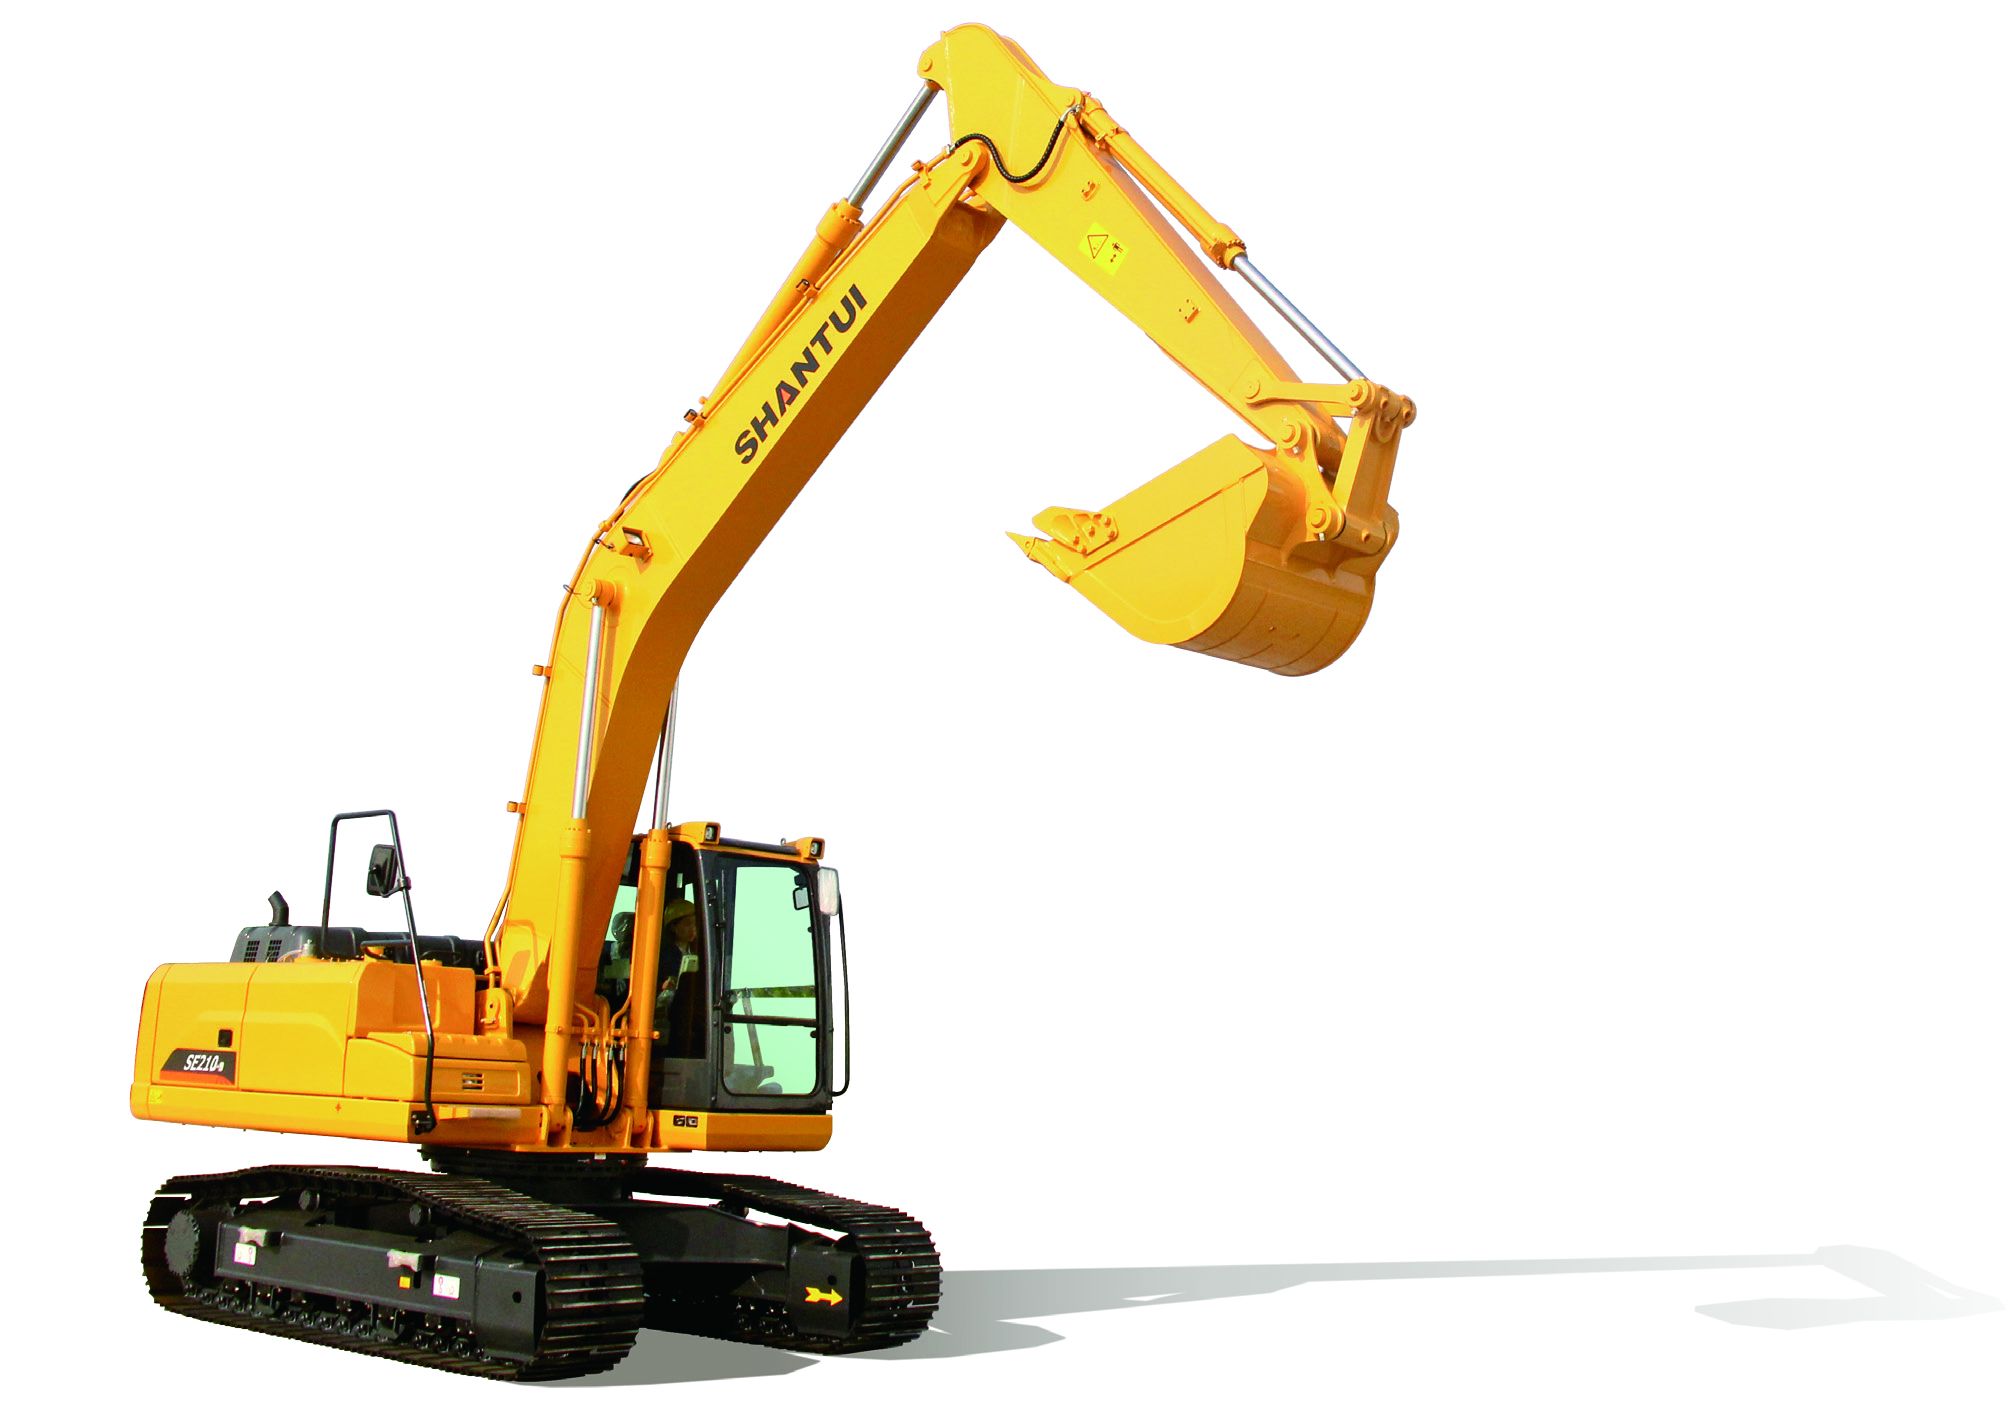 Shantui 20.8ton Medium-Sized Crawler Excavator